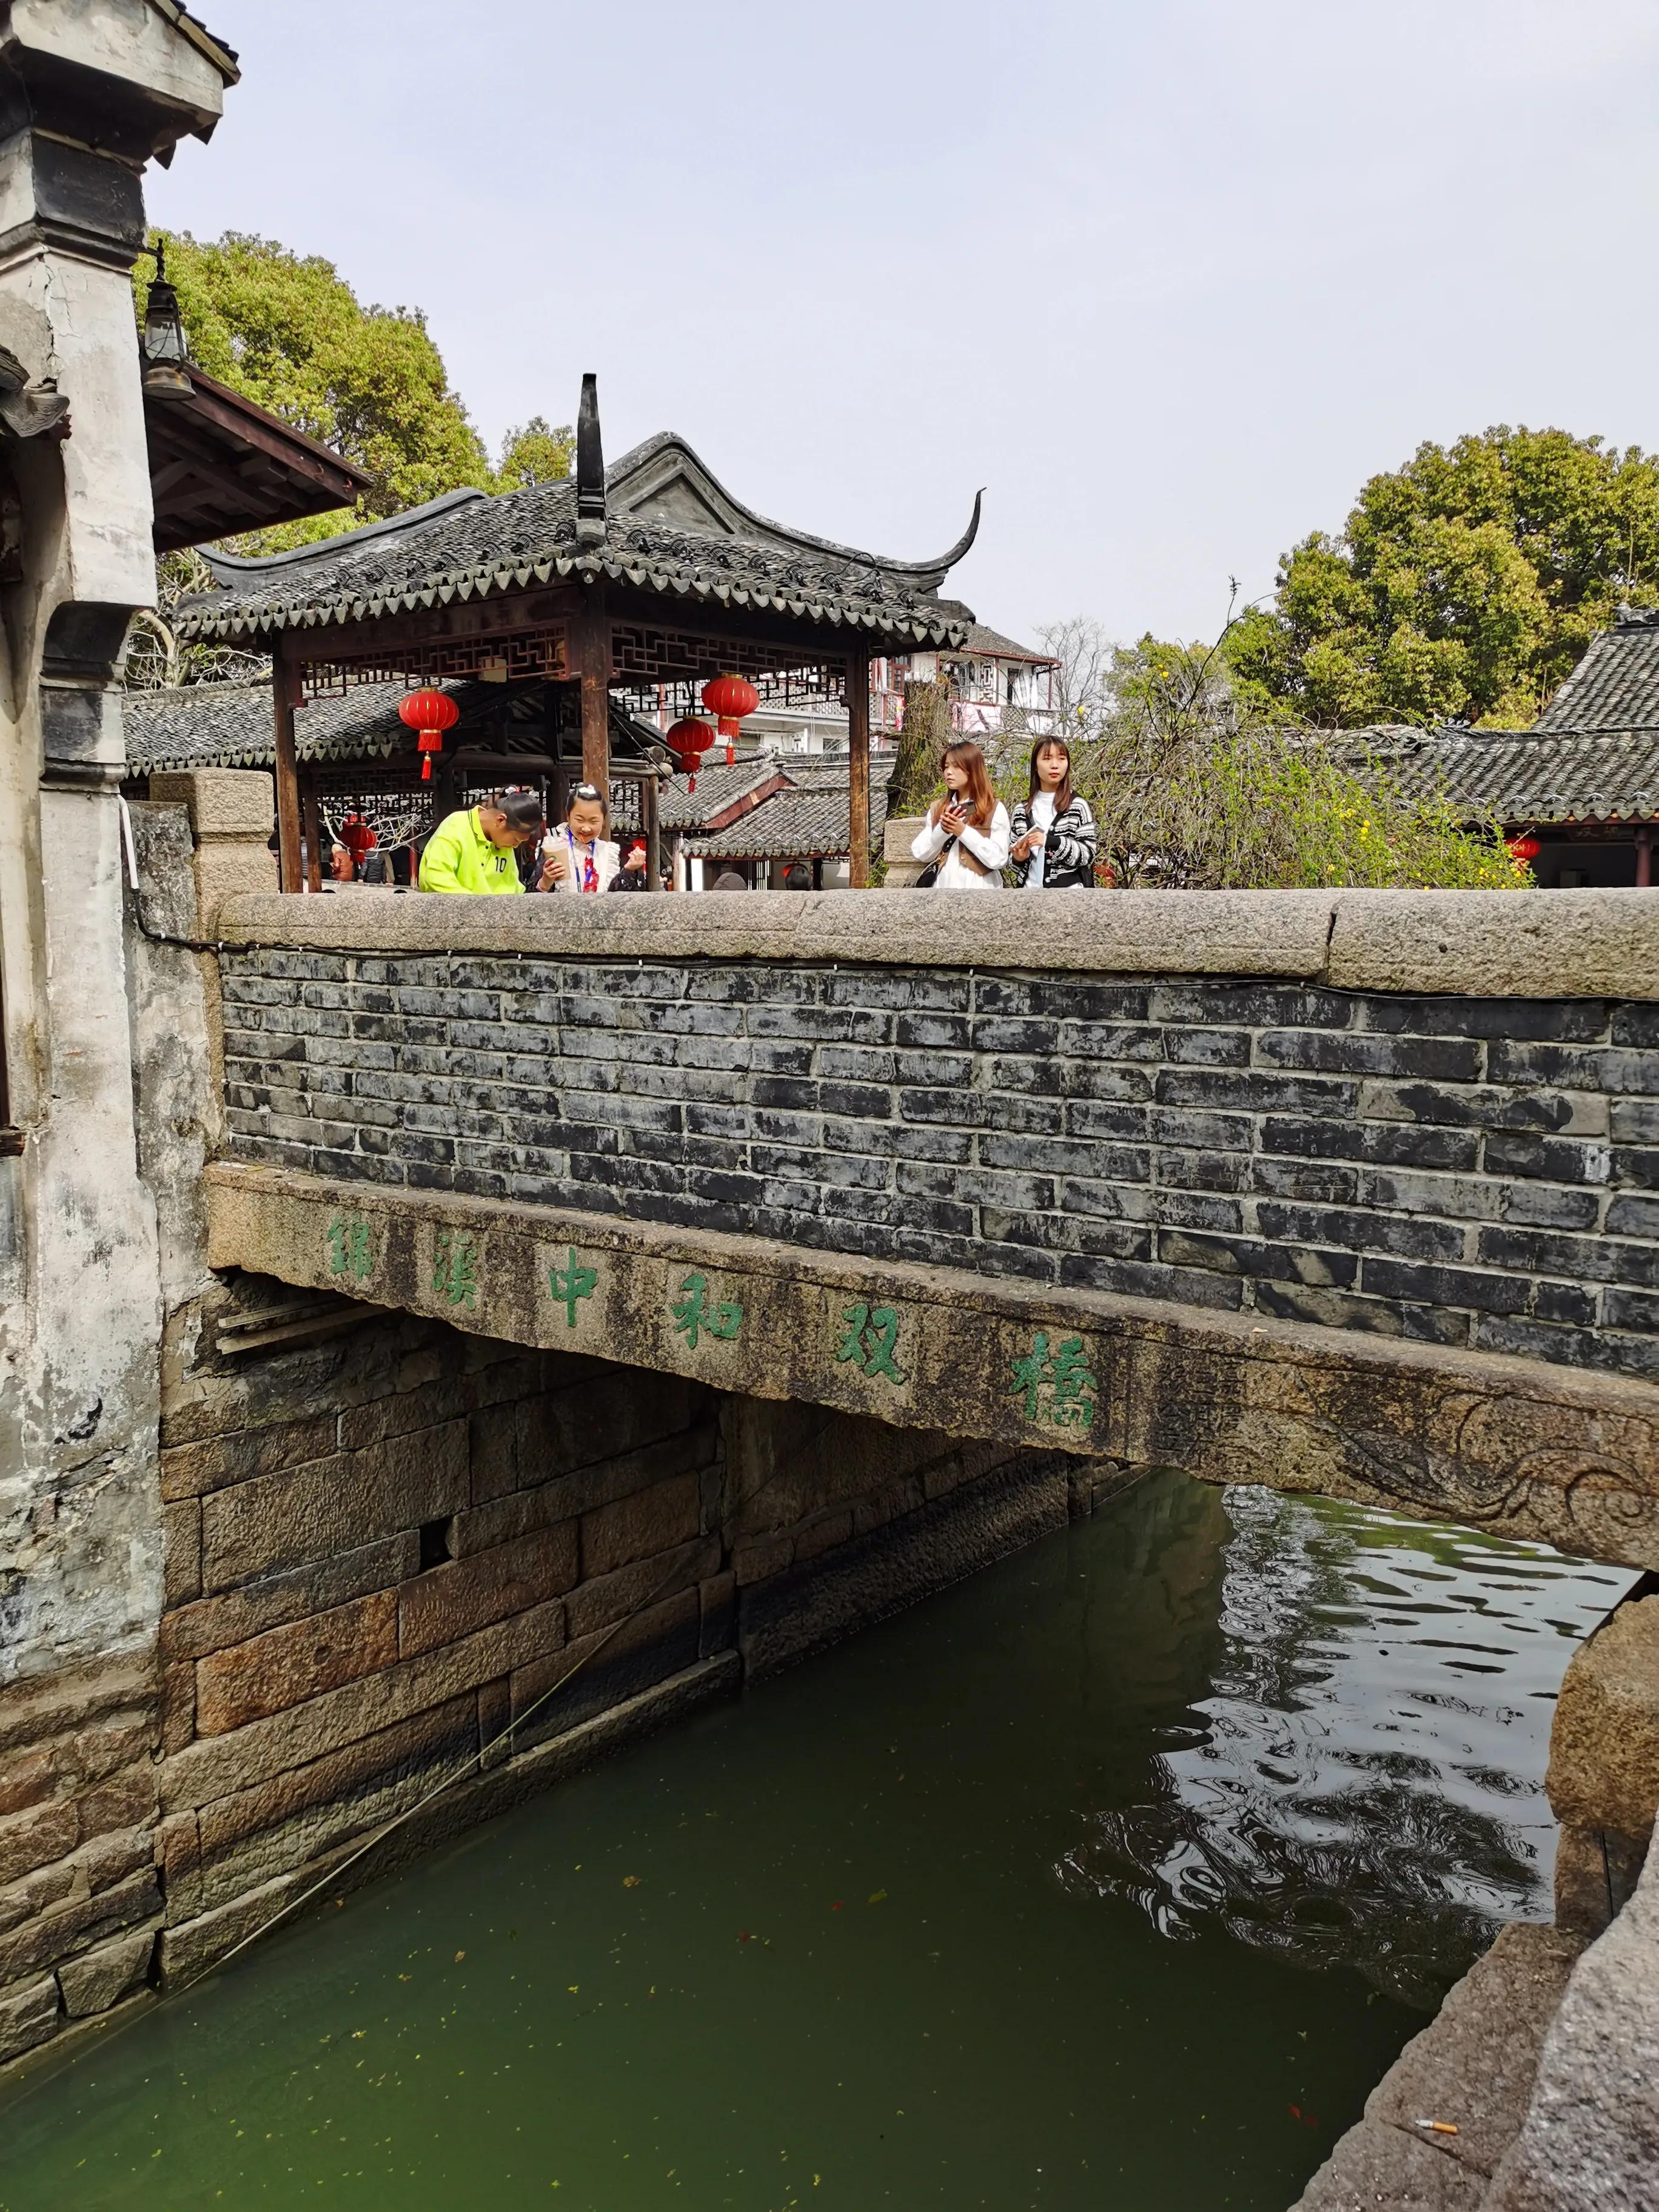 【携程攻略】昆山锦溪古镇景点,这个古镇范围有点大的，长桥湖泊，老街新貌。上海的后花园，不用门票…